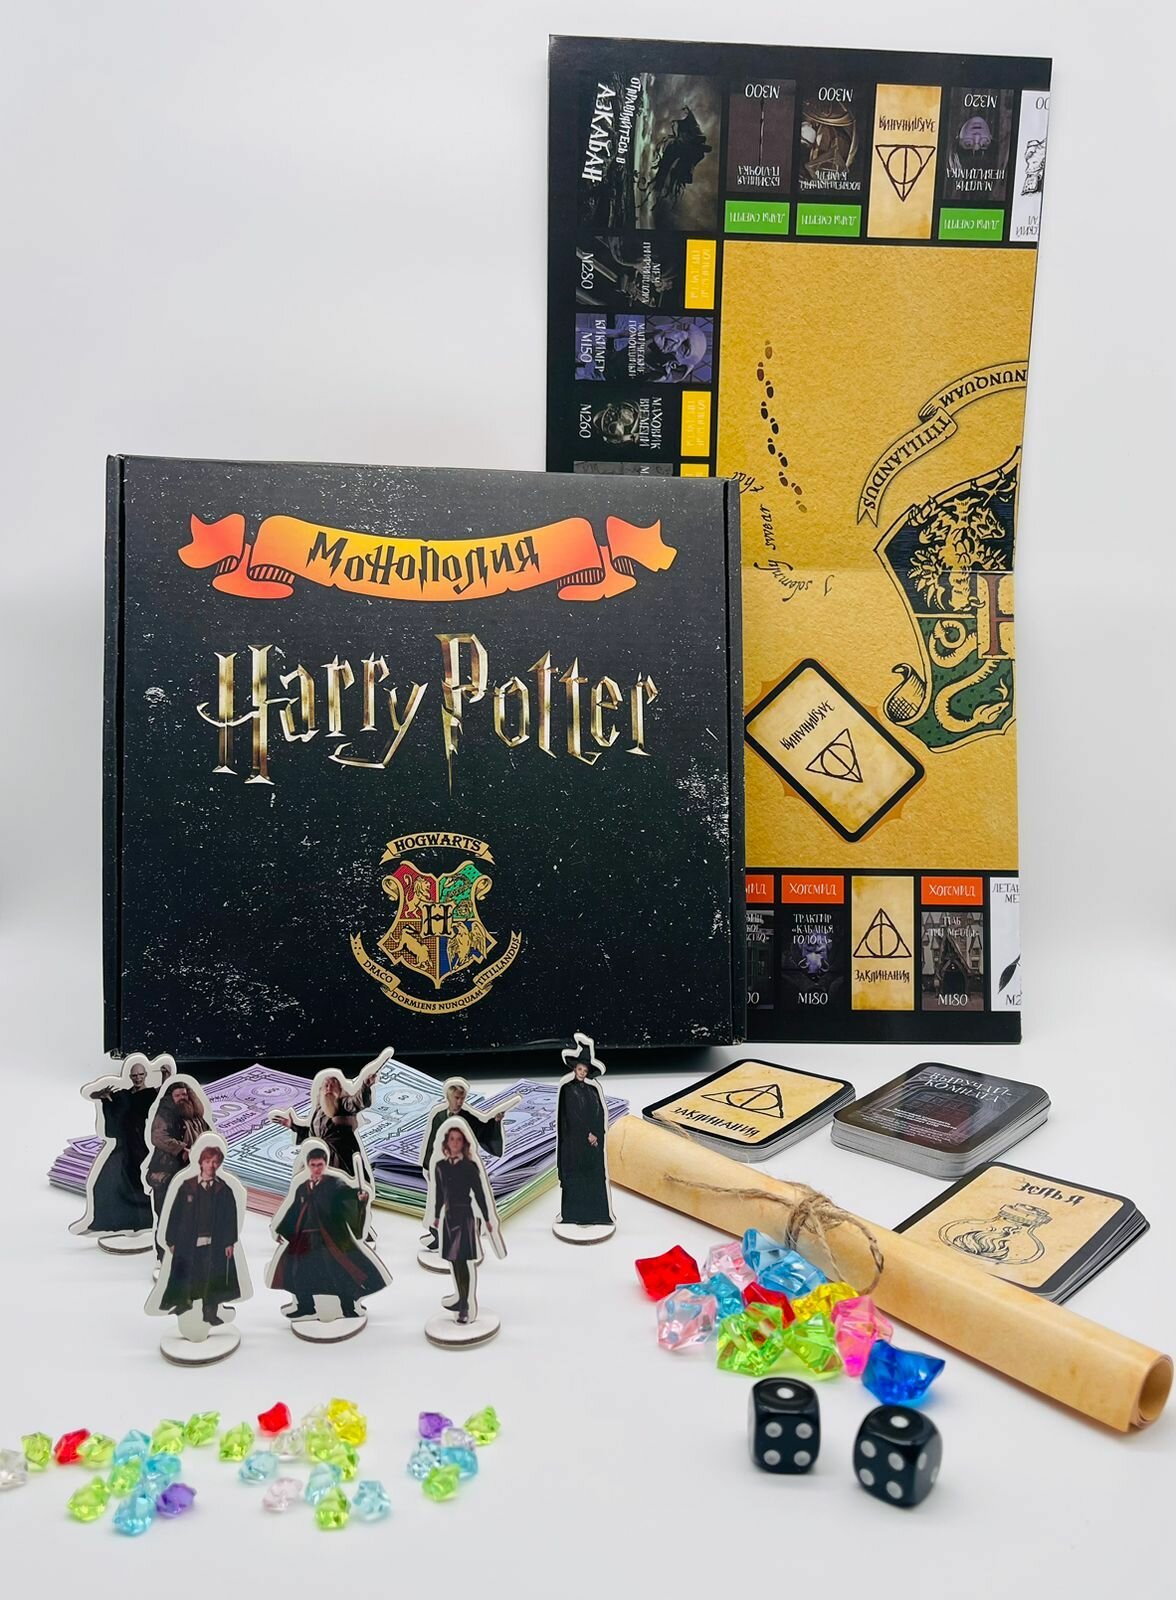 Настольная игра Monopoly Harry Potter , Гарри Поттер, для взрослых и детей, подарок на на день рождение 23 февраля 8 марта